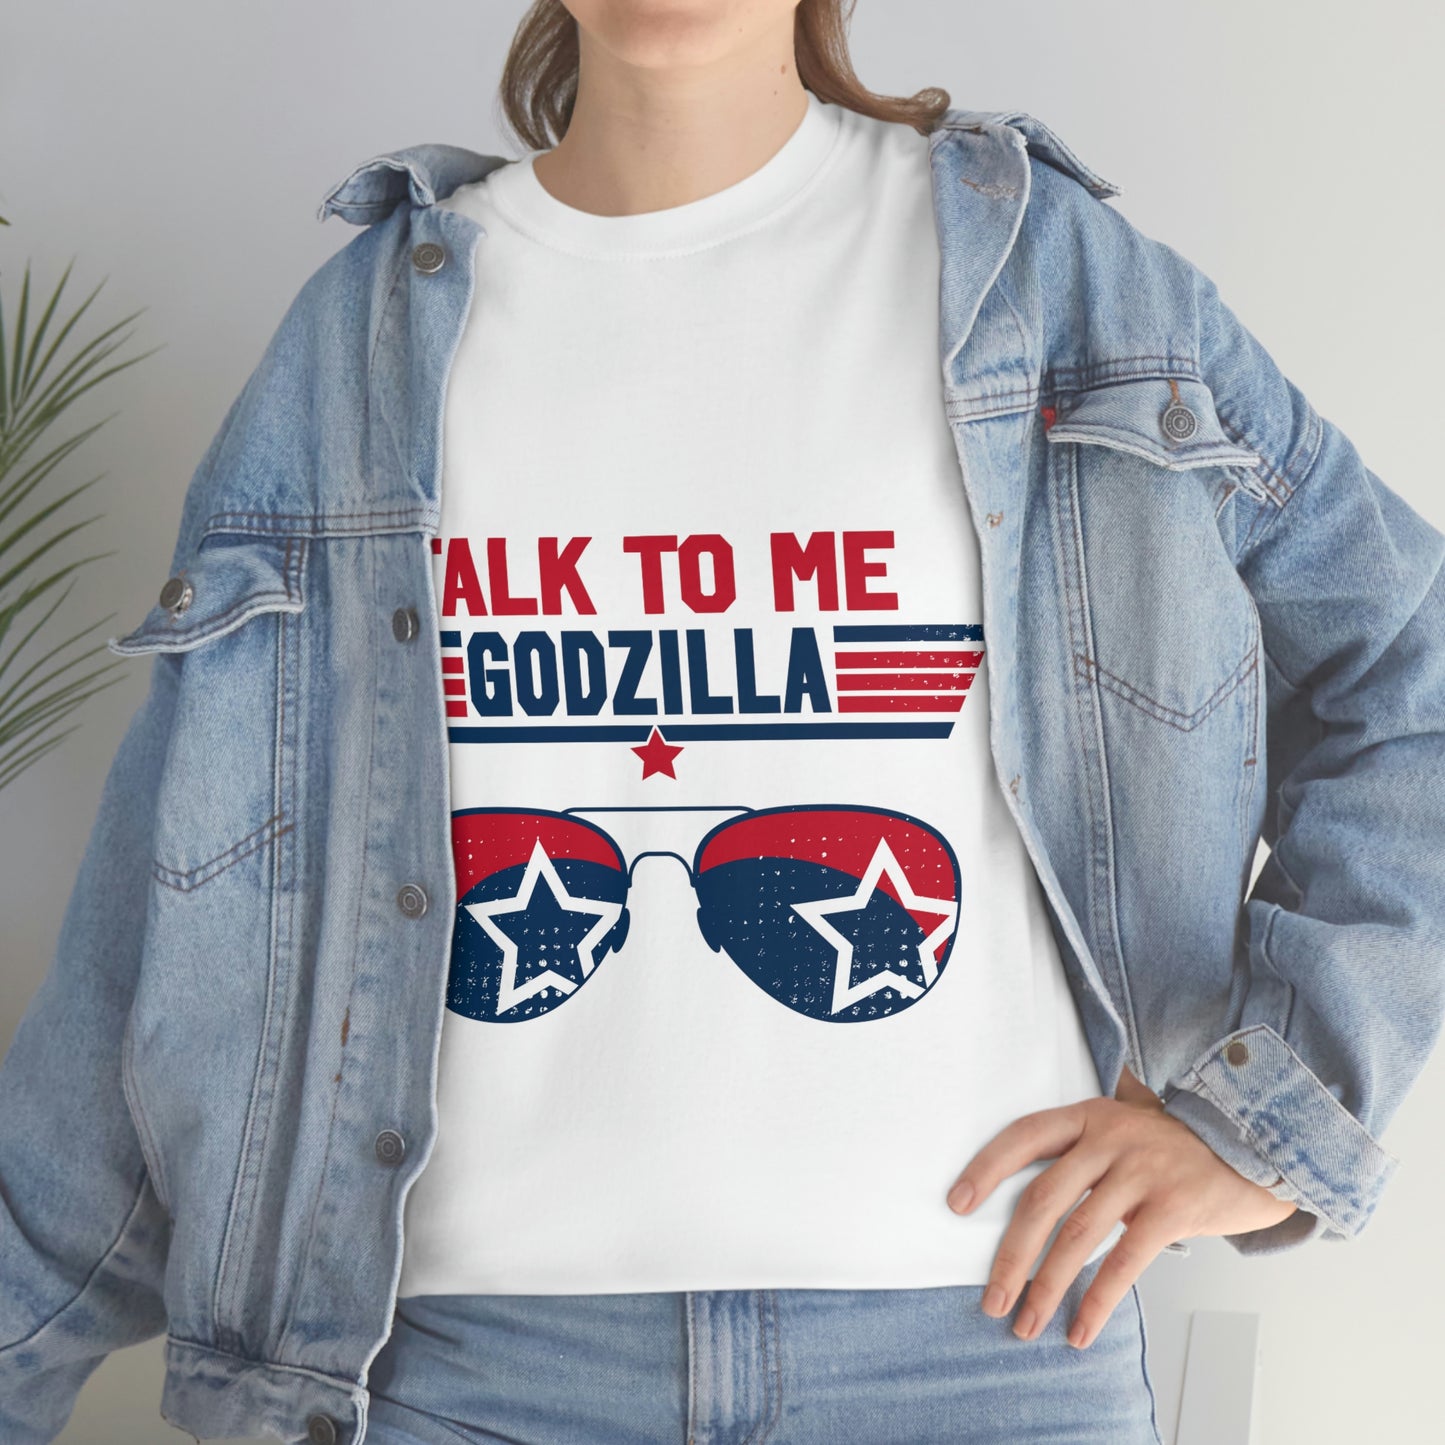 "Talk To Me Godzilla"  -  Unisex Heavy Cotton Tee